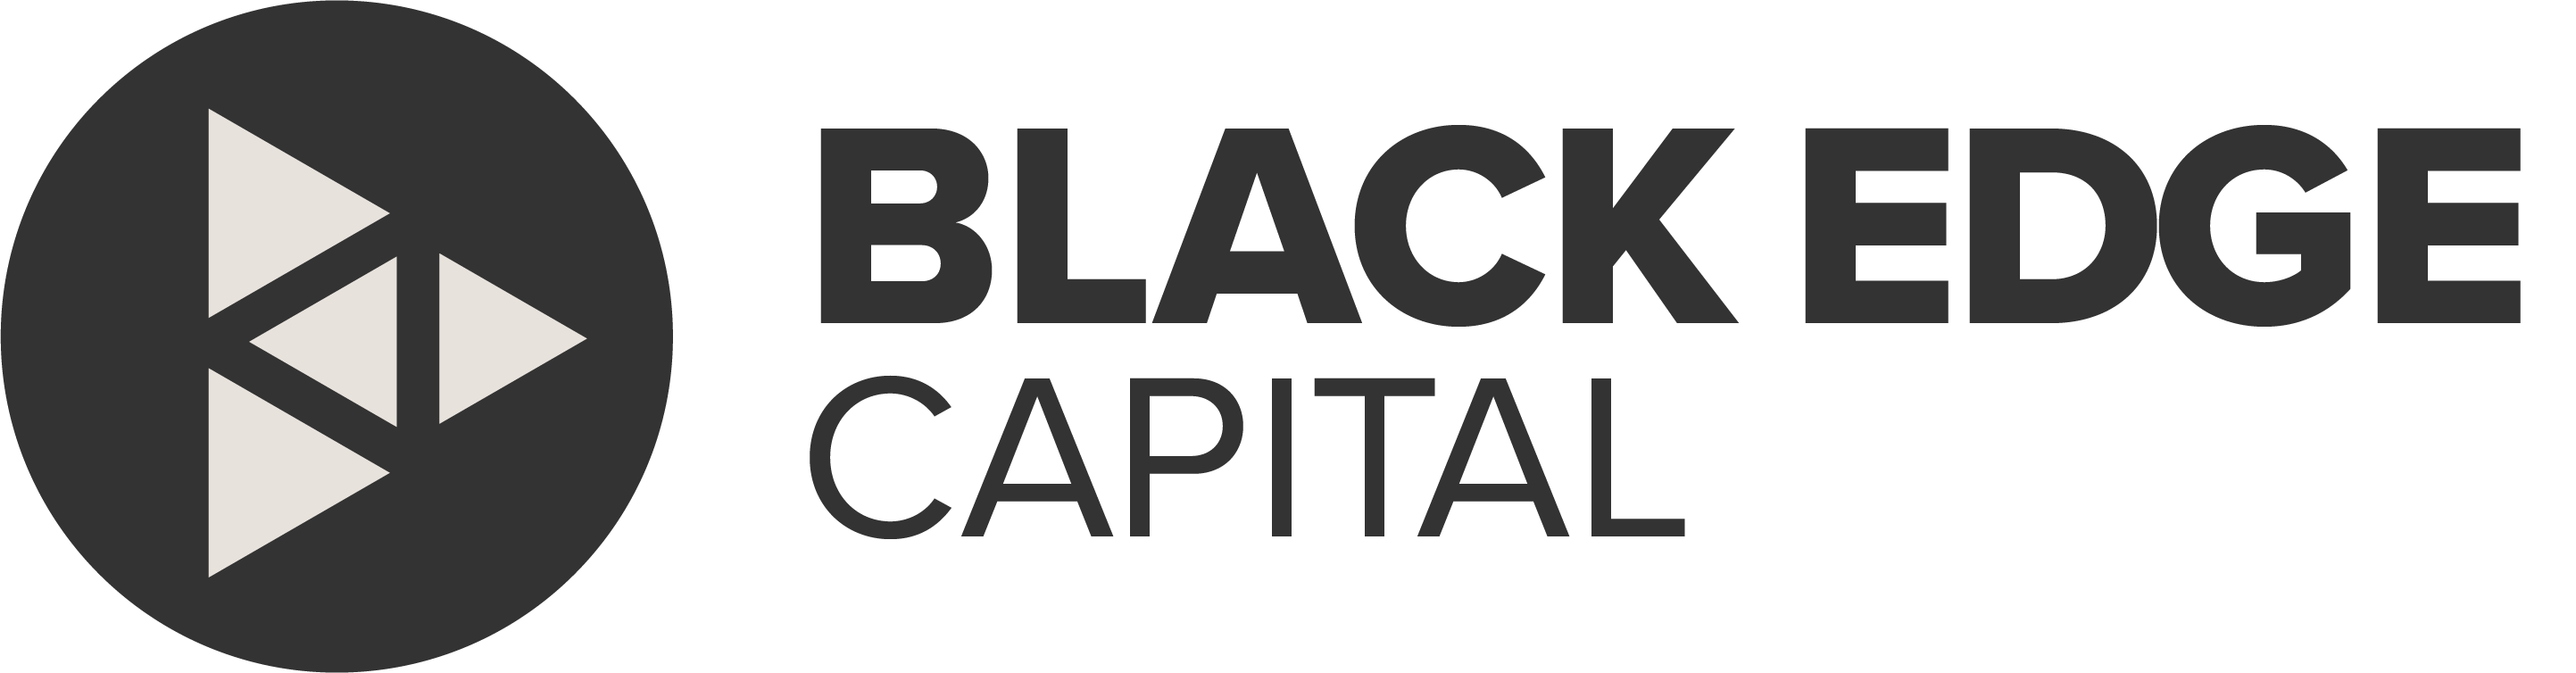 BlackEdgeCapital logo image